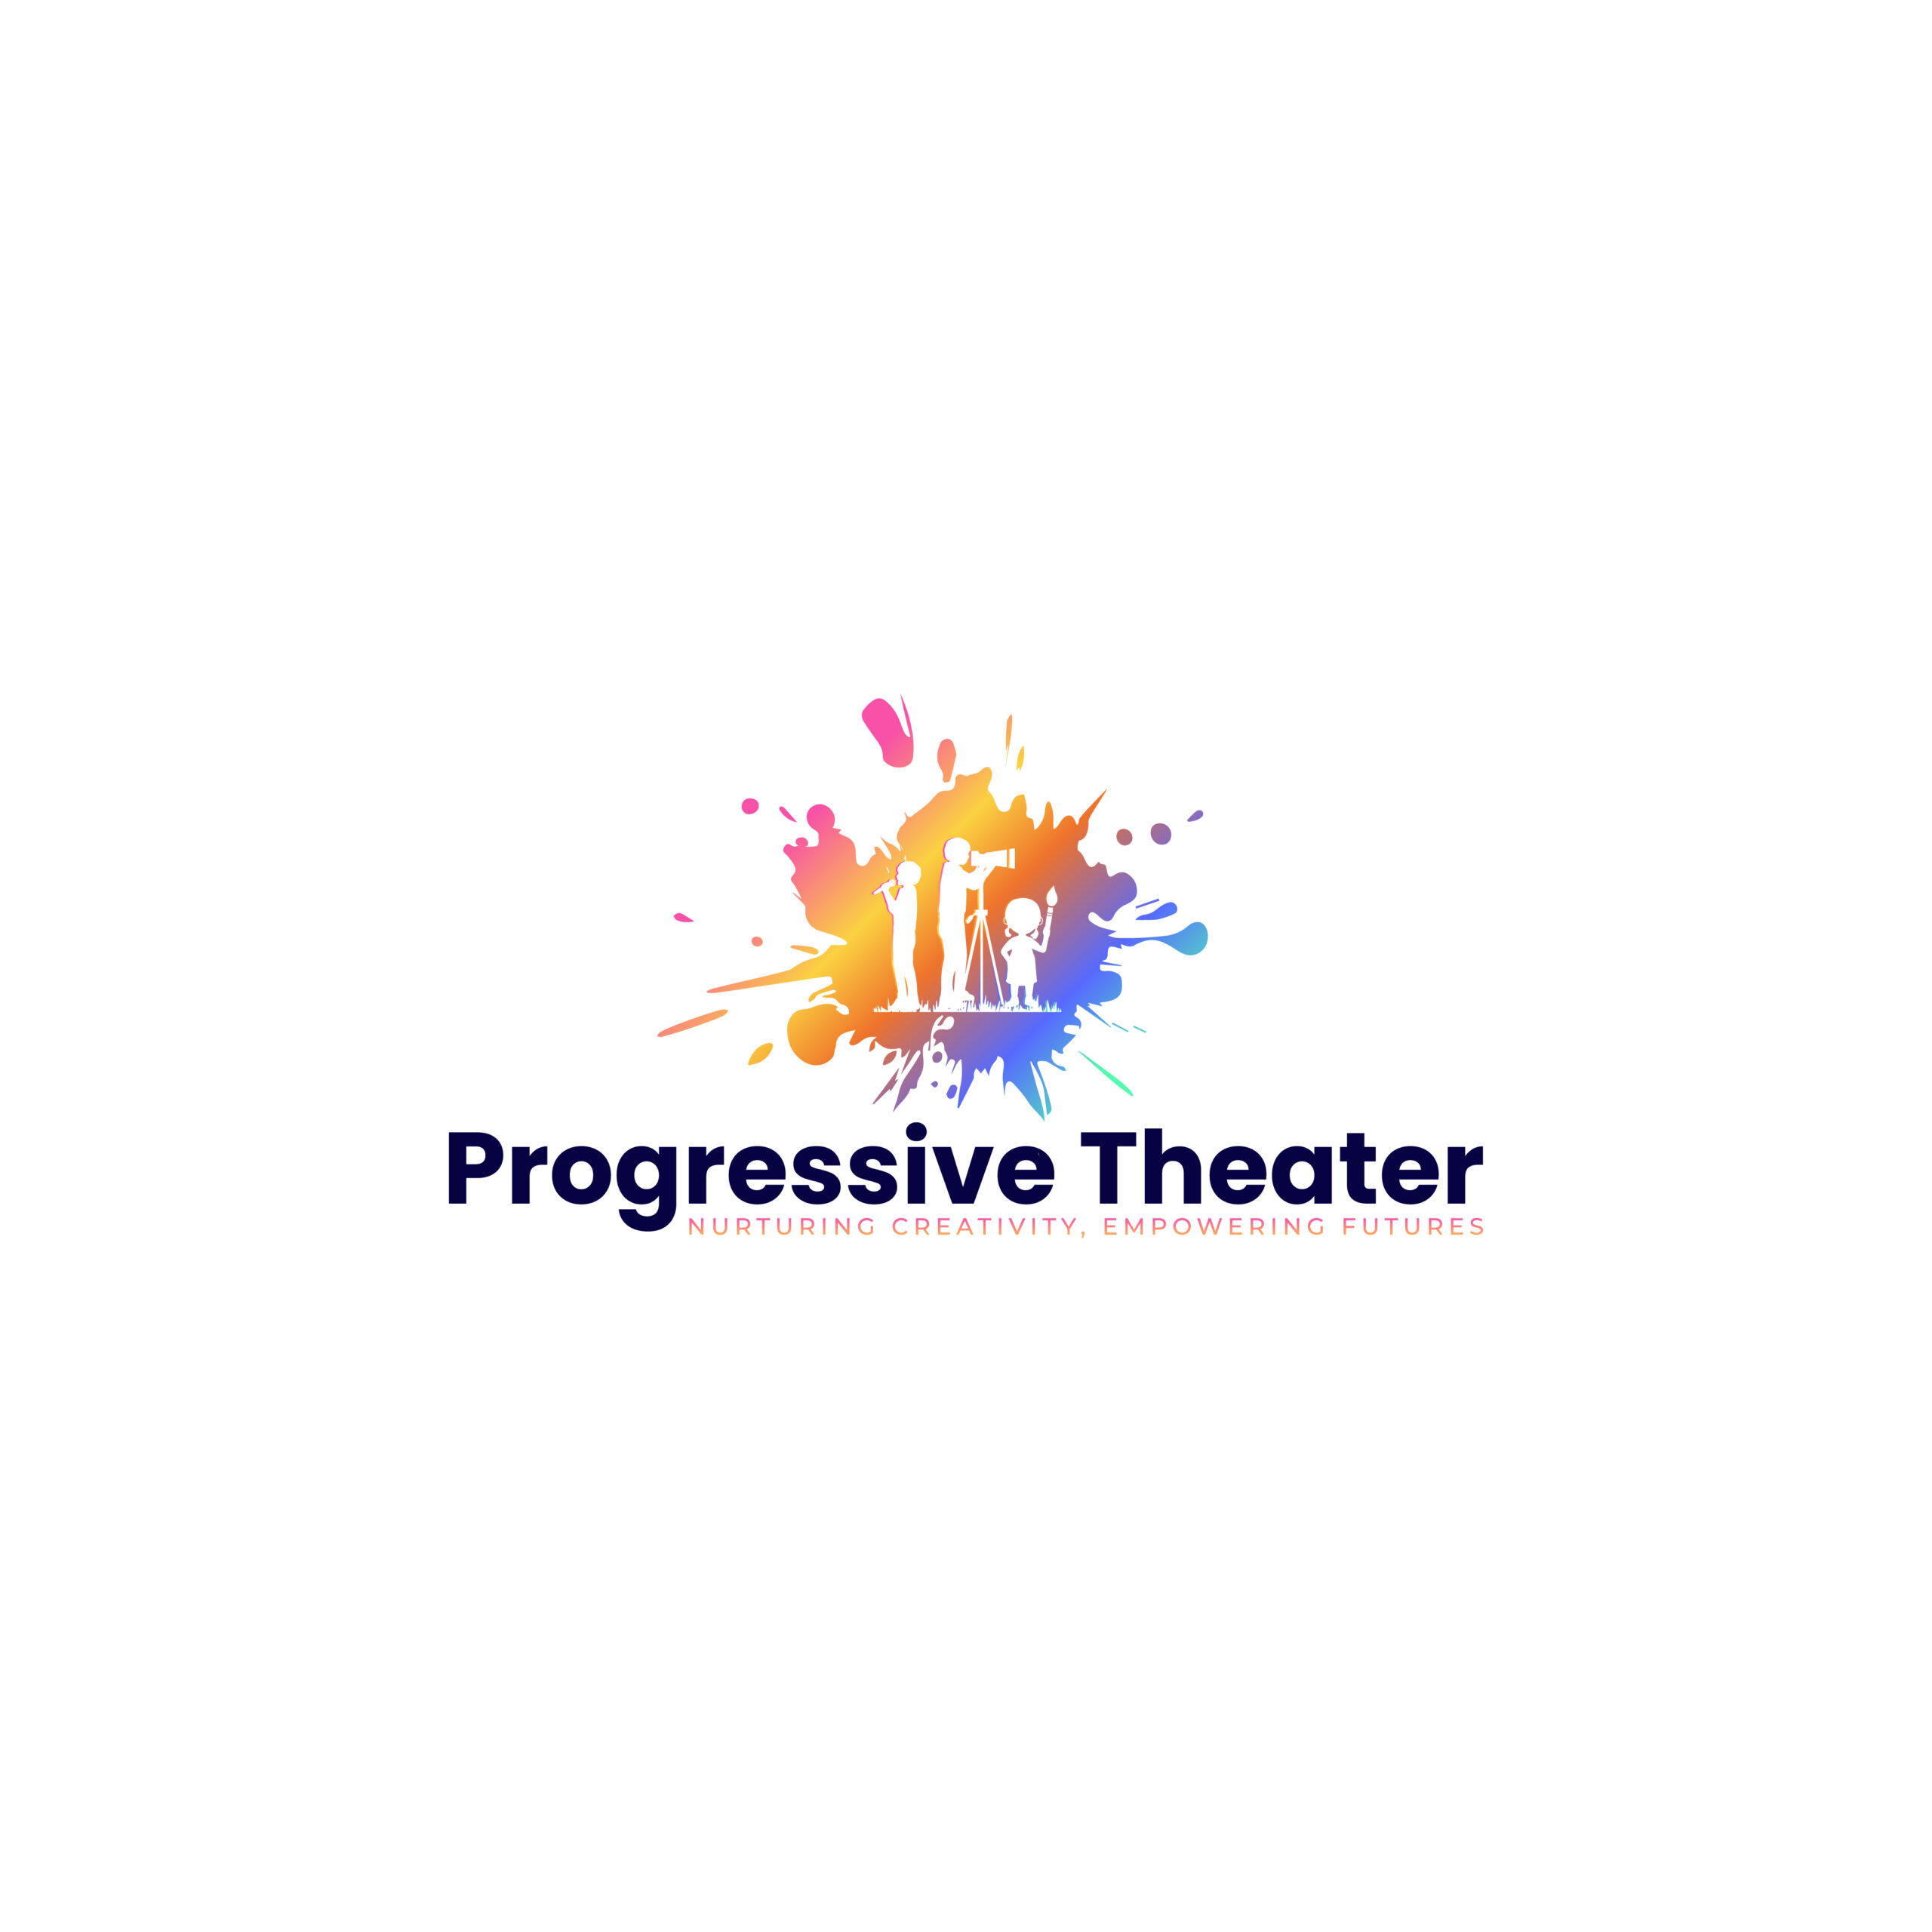 Progressive Theater